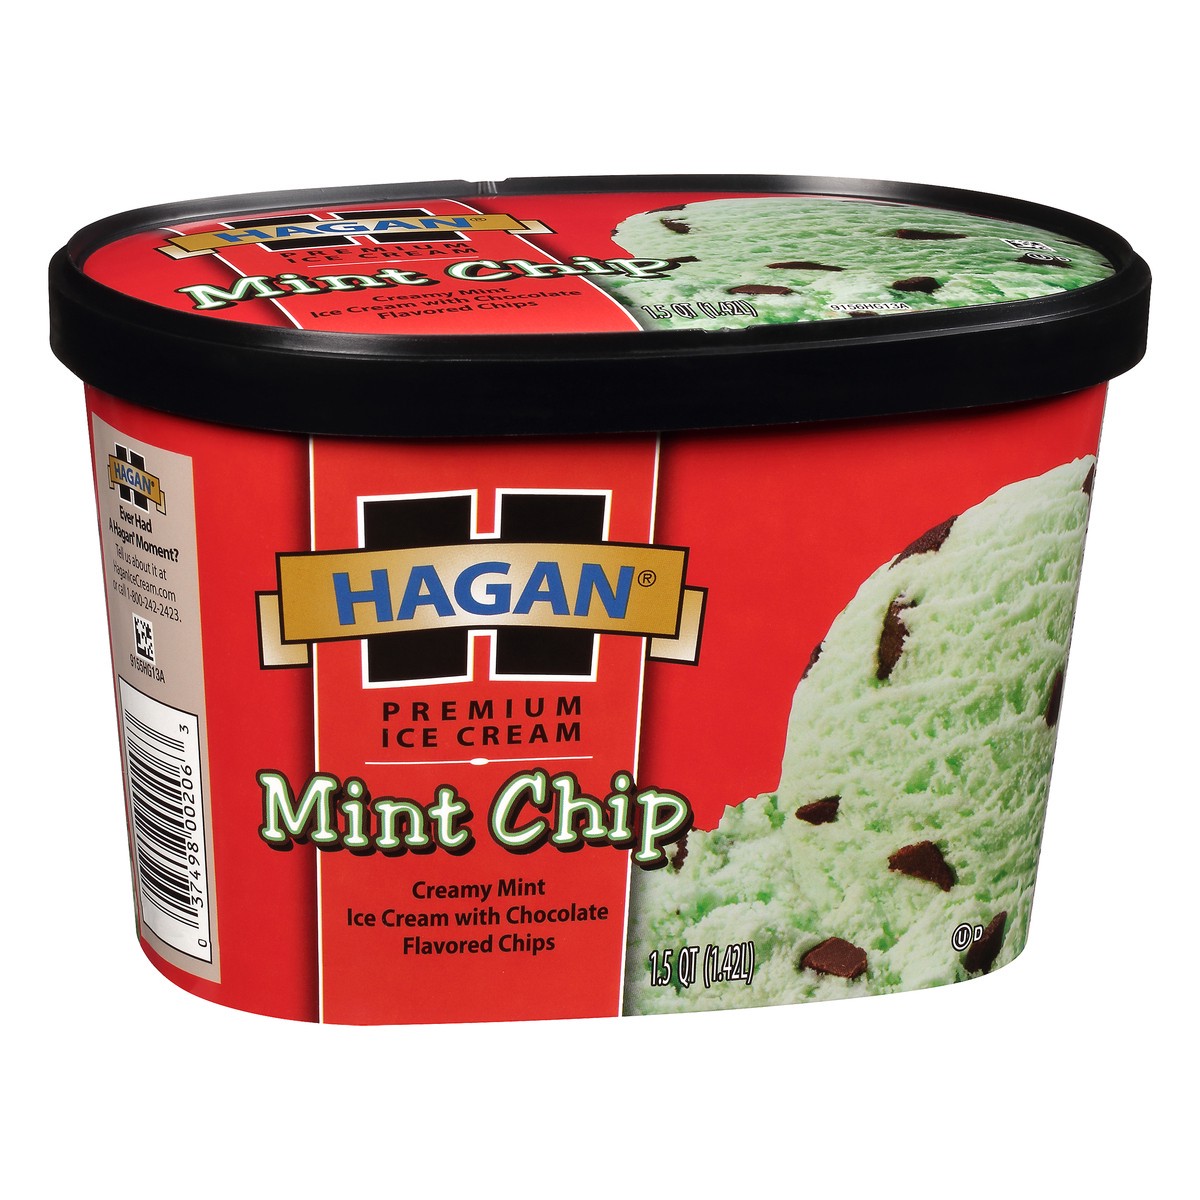 slide 4 of 10, Hagan Mint Chip Premium Ice Cream 1.5 qt. Tub, 1.42 liter